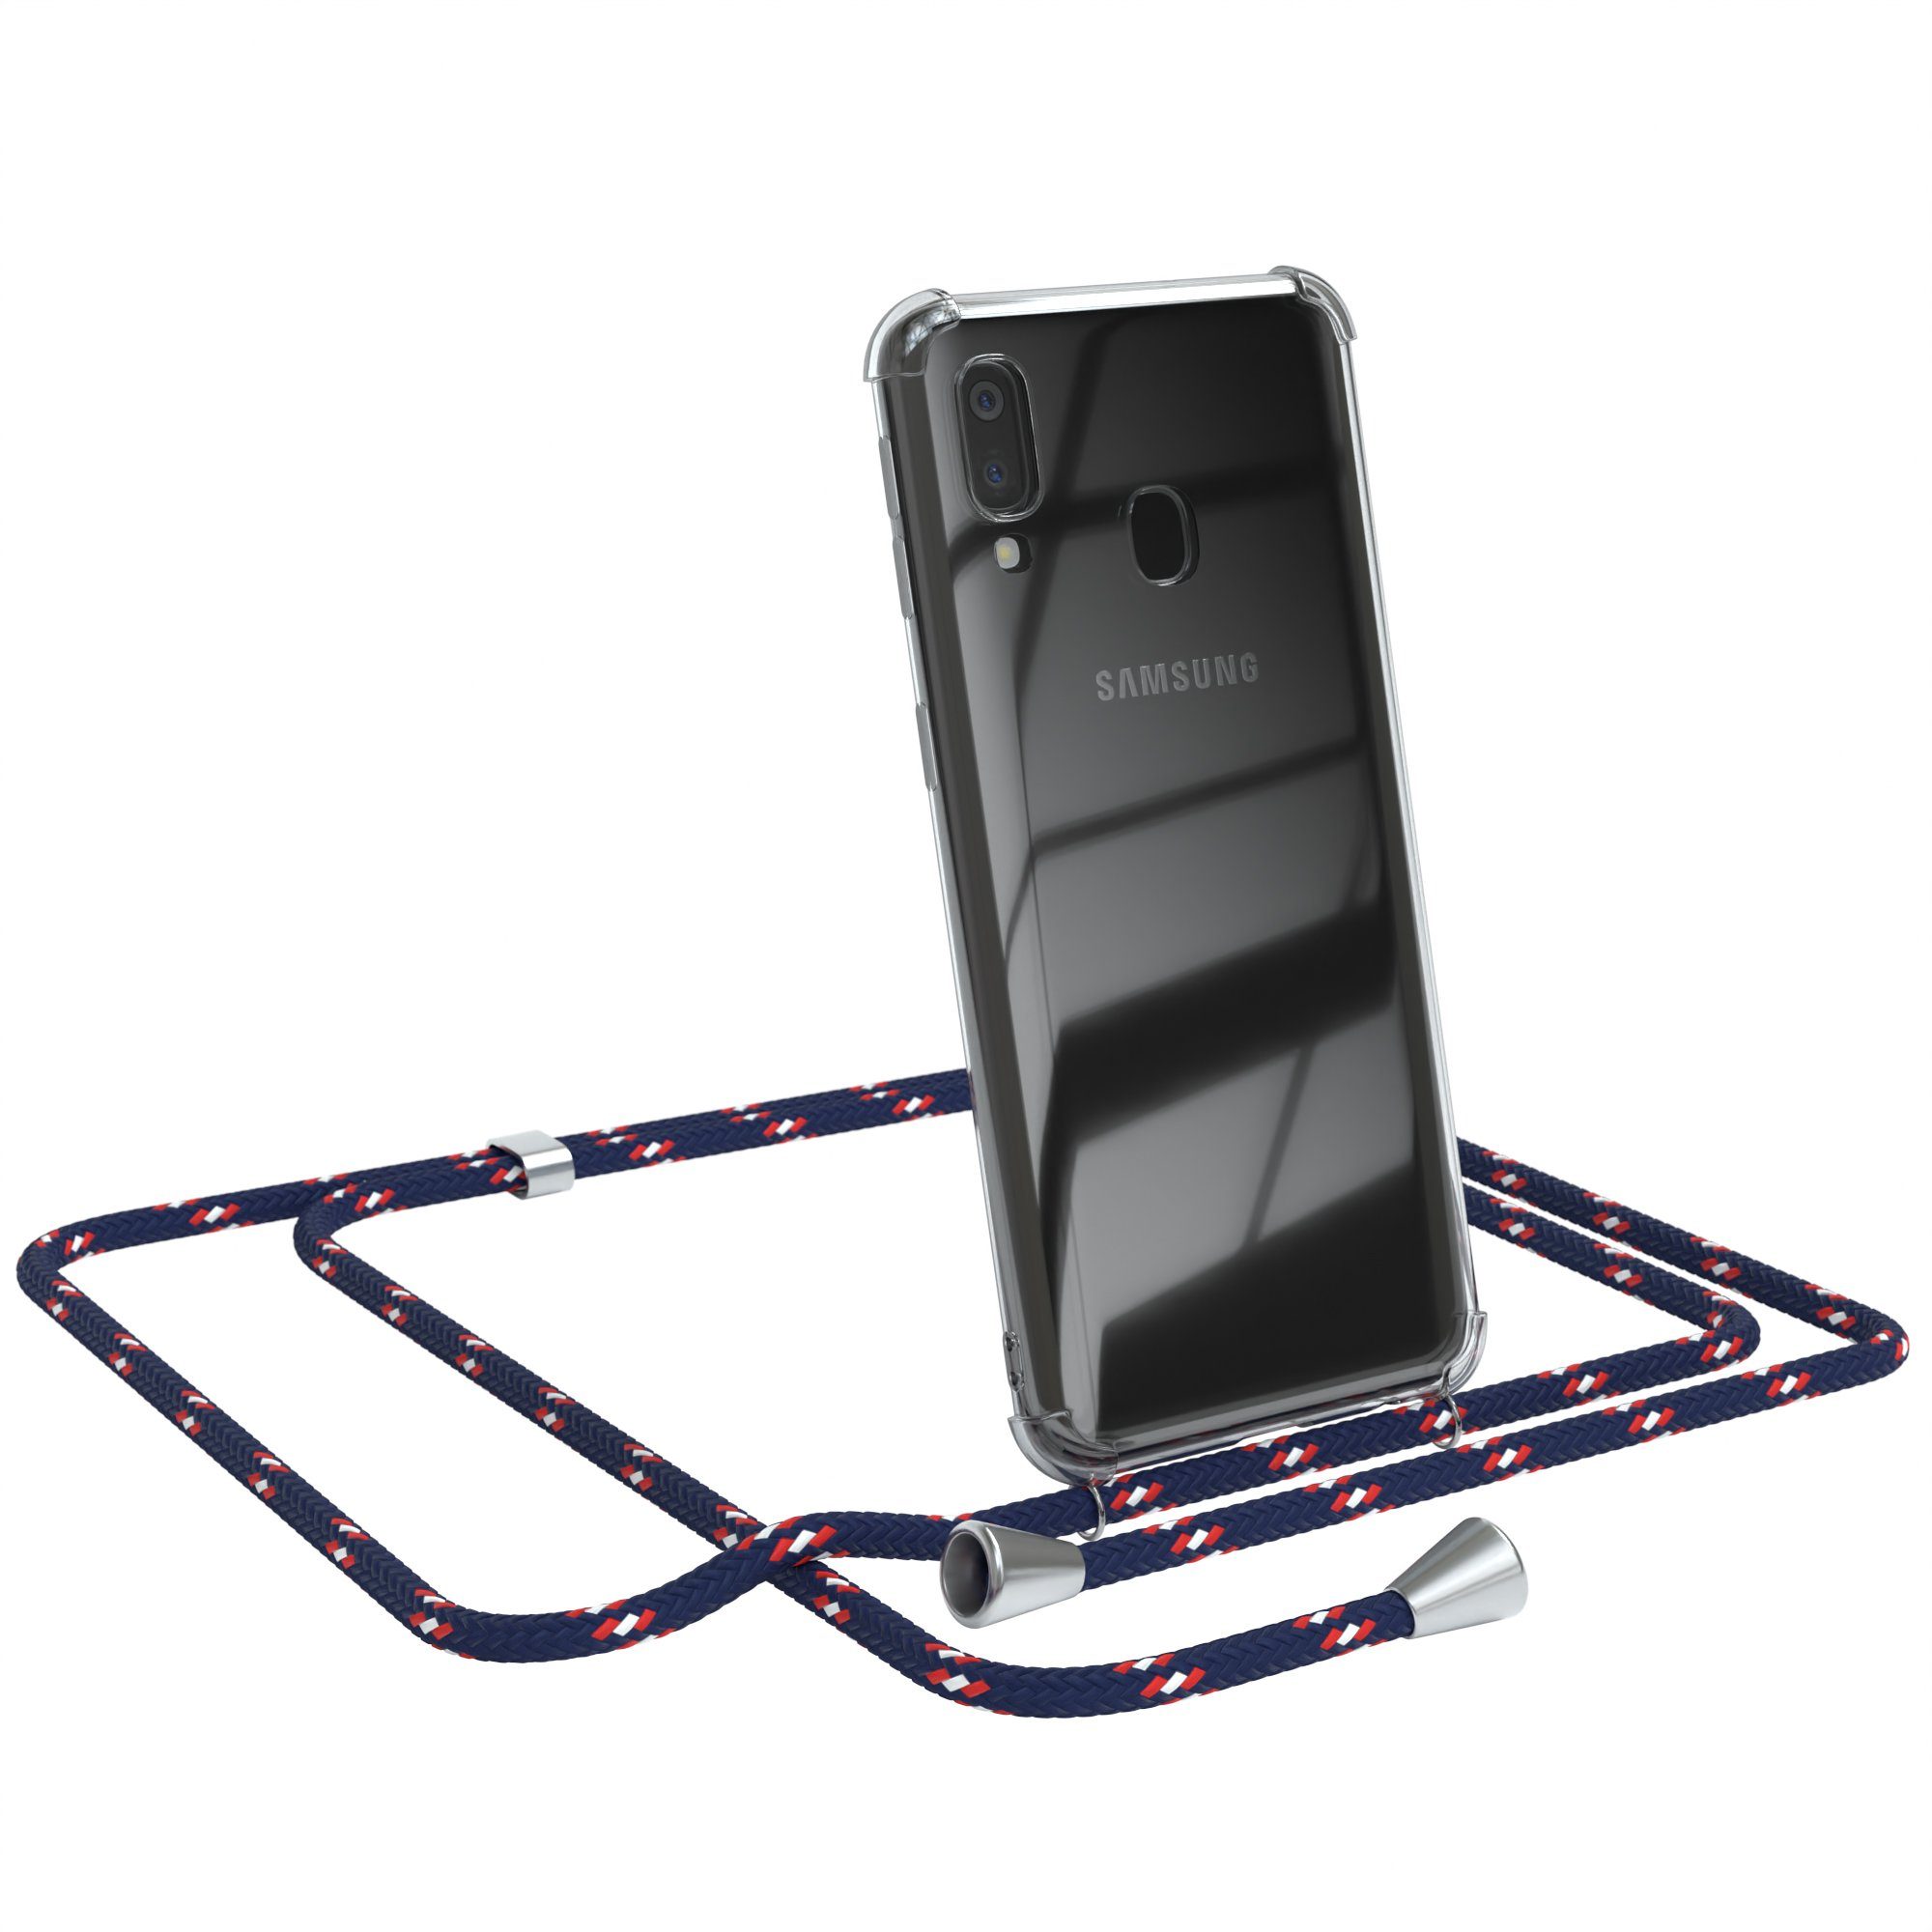 EAZY CASE Handykette Hülle mit Kette für Samsung Galaxy A40 5,9 Zoll, Slimcover Handykette Hülle Cross Bag für Smartphone Blau Camouflage